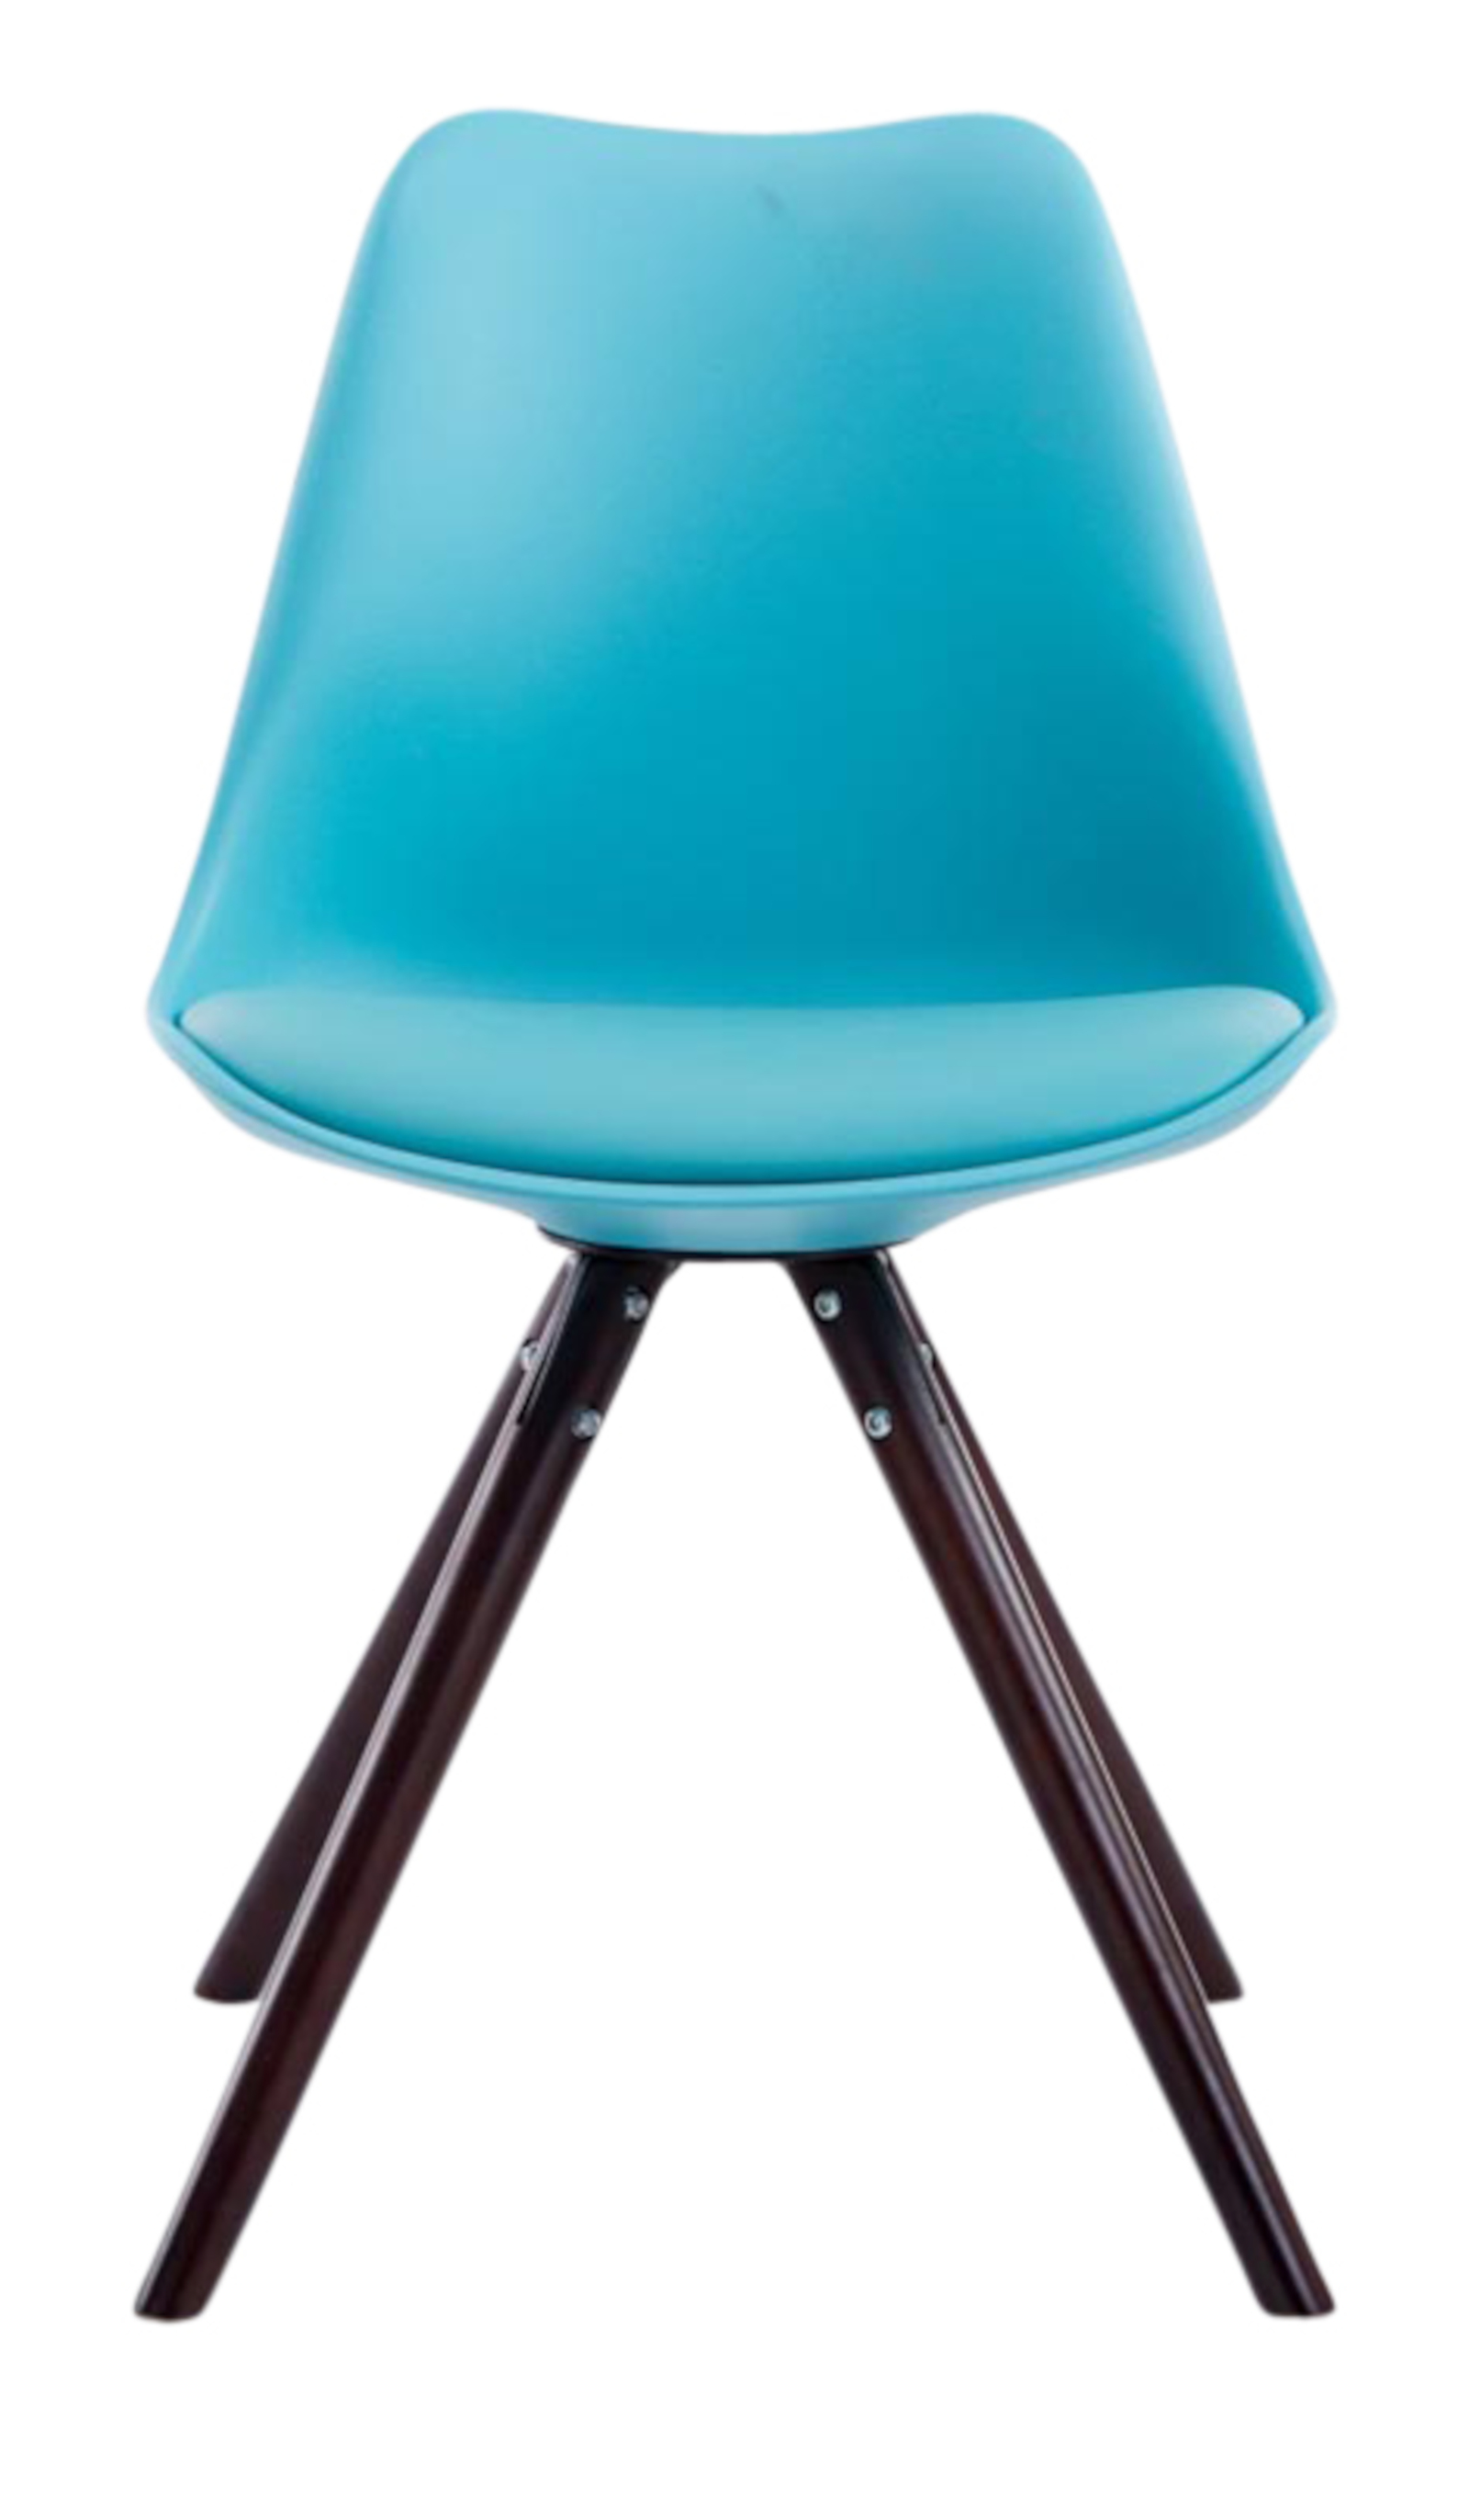 4er Set Stühle Toulouse Kunstleder Rund blau cappuccino